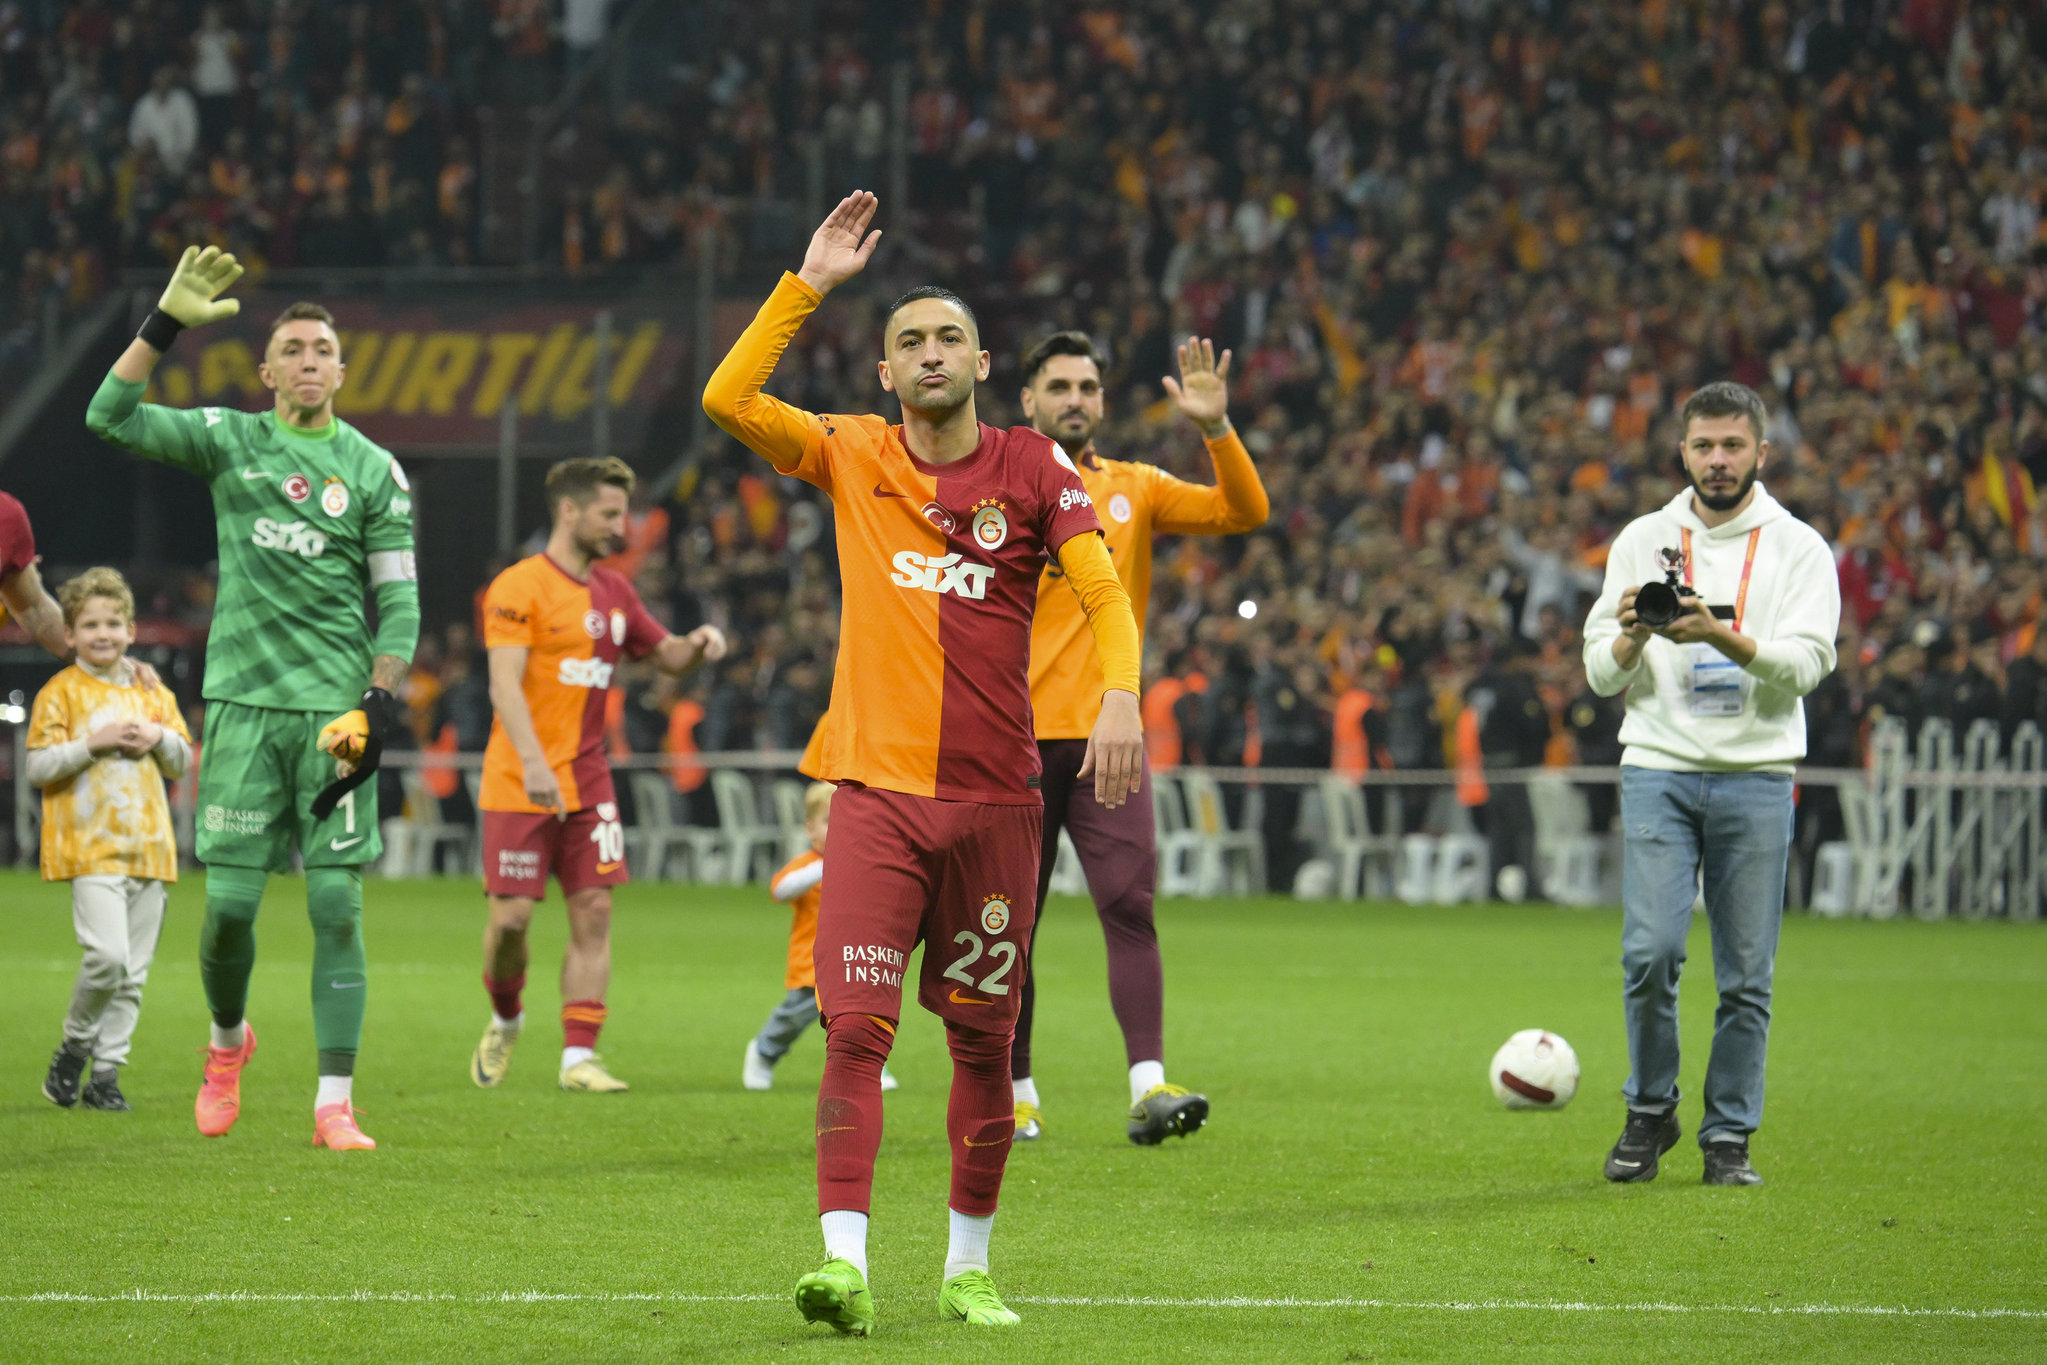 TRANSFER HABERİ: Galatasaray’ın bitmeyen aşkı! Okan Buruk ısrarla istiyor